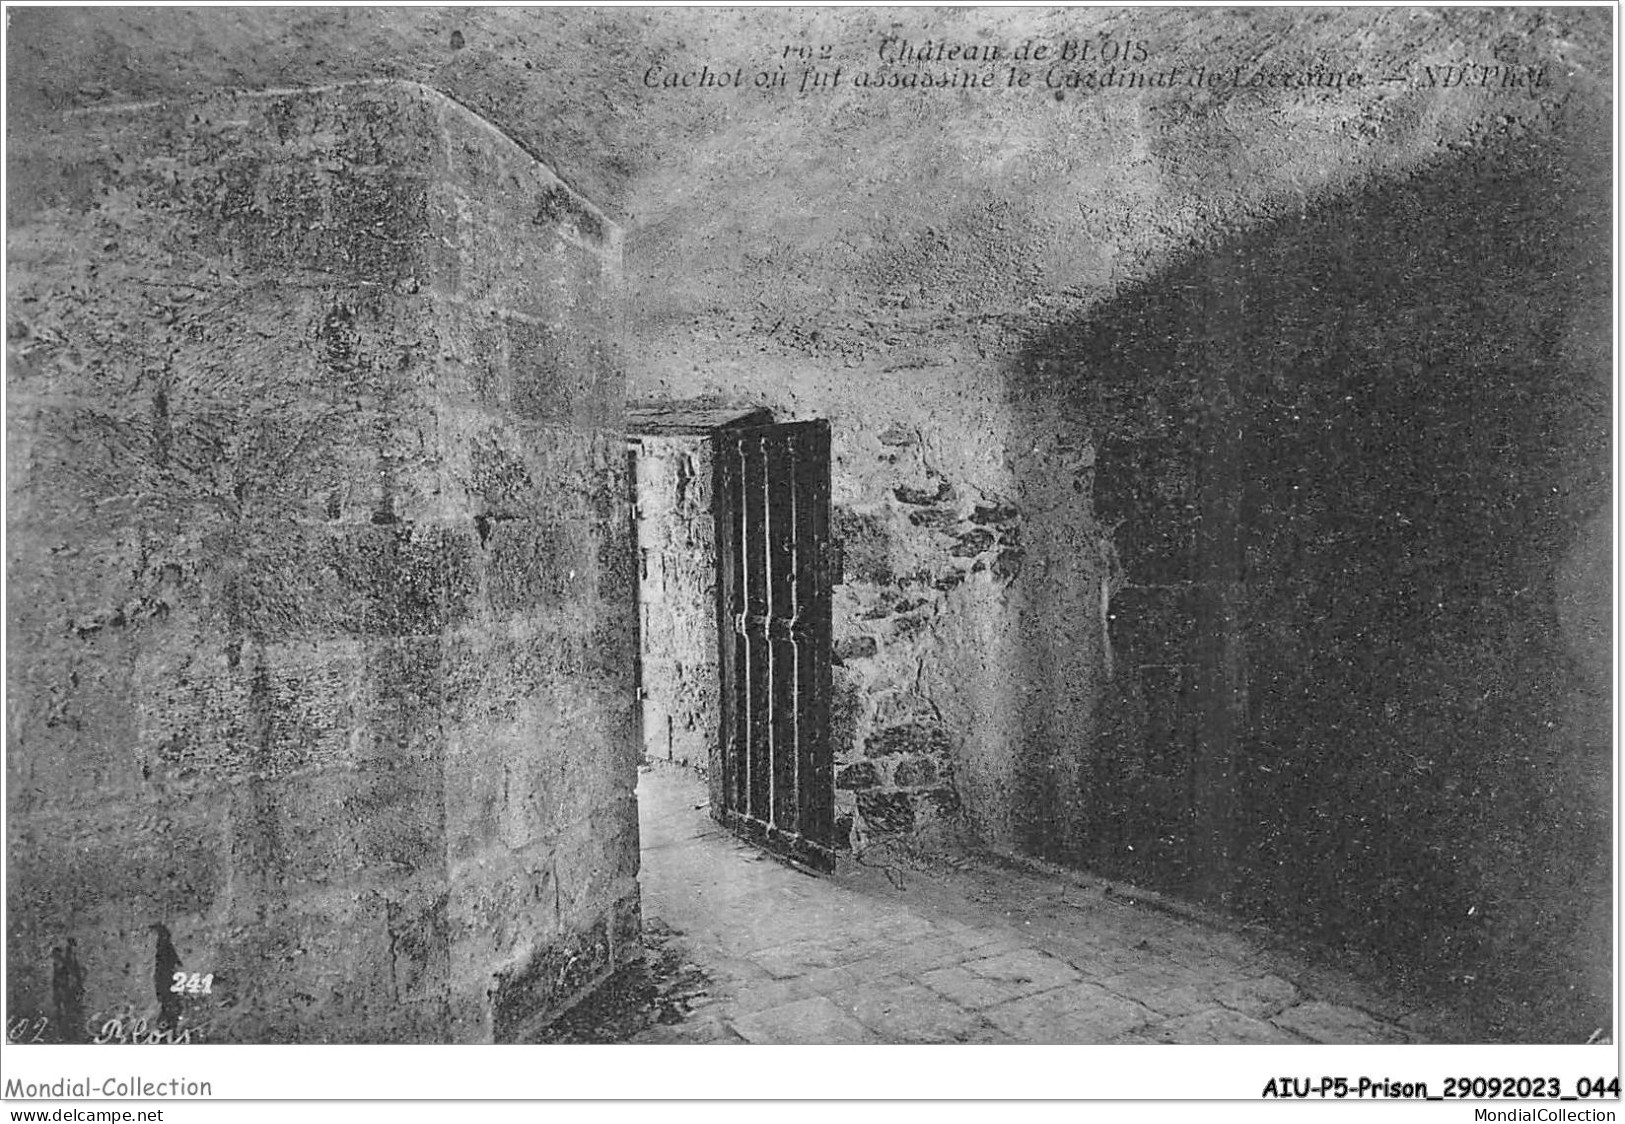 AIUP5-0428 - PRISON - Chateau De Blois - Cachot Ou Fut Assasiné Le Cardinal - Bagne & Bagnards